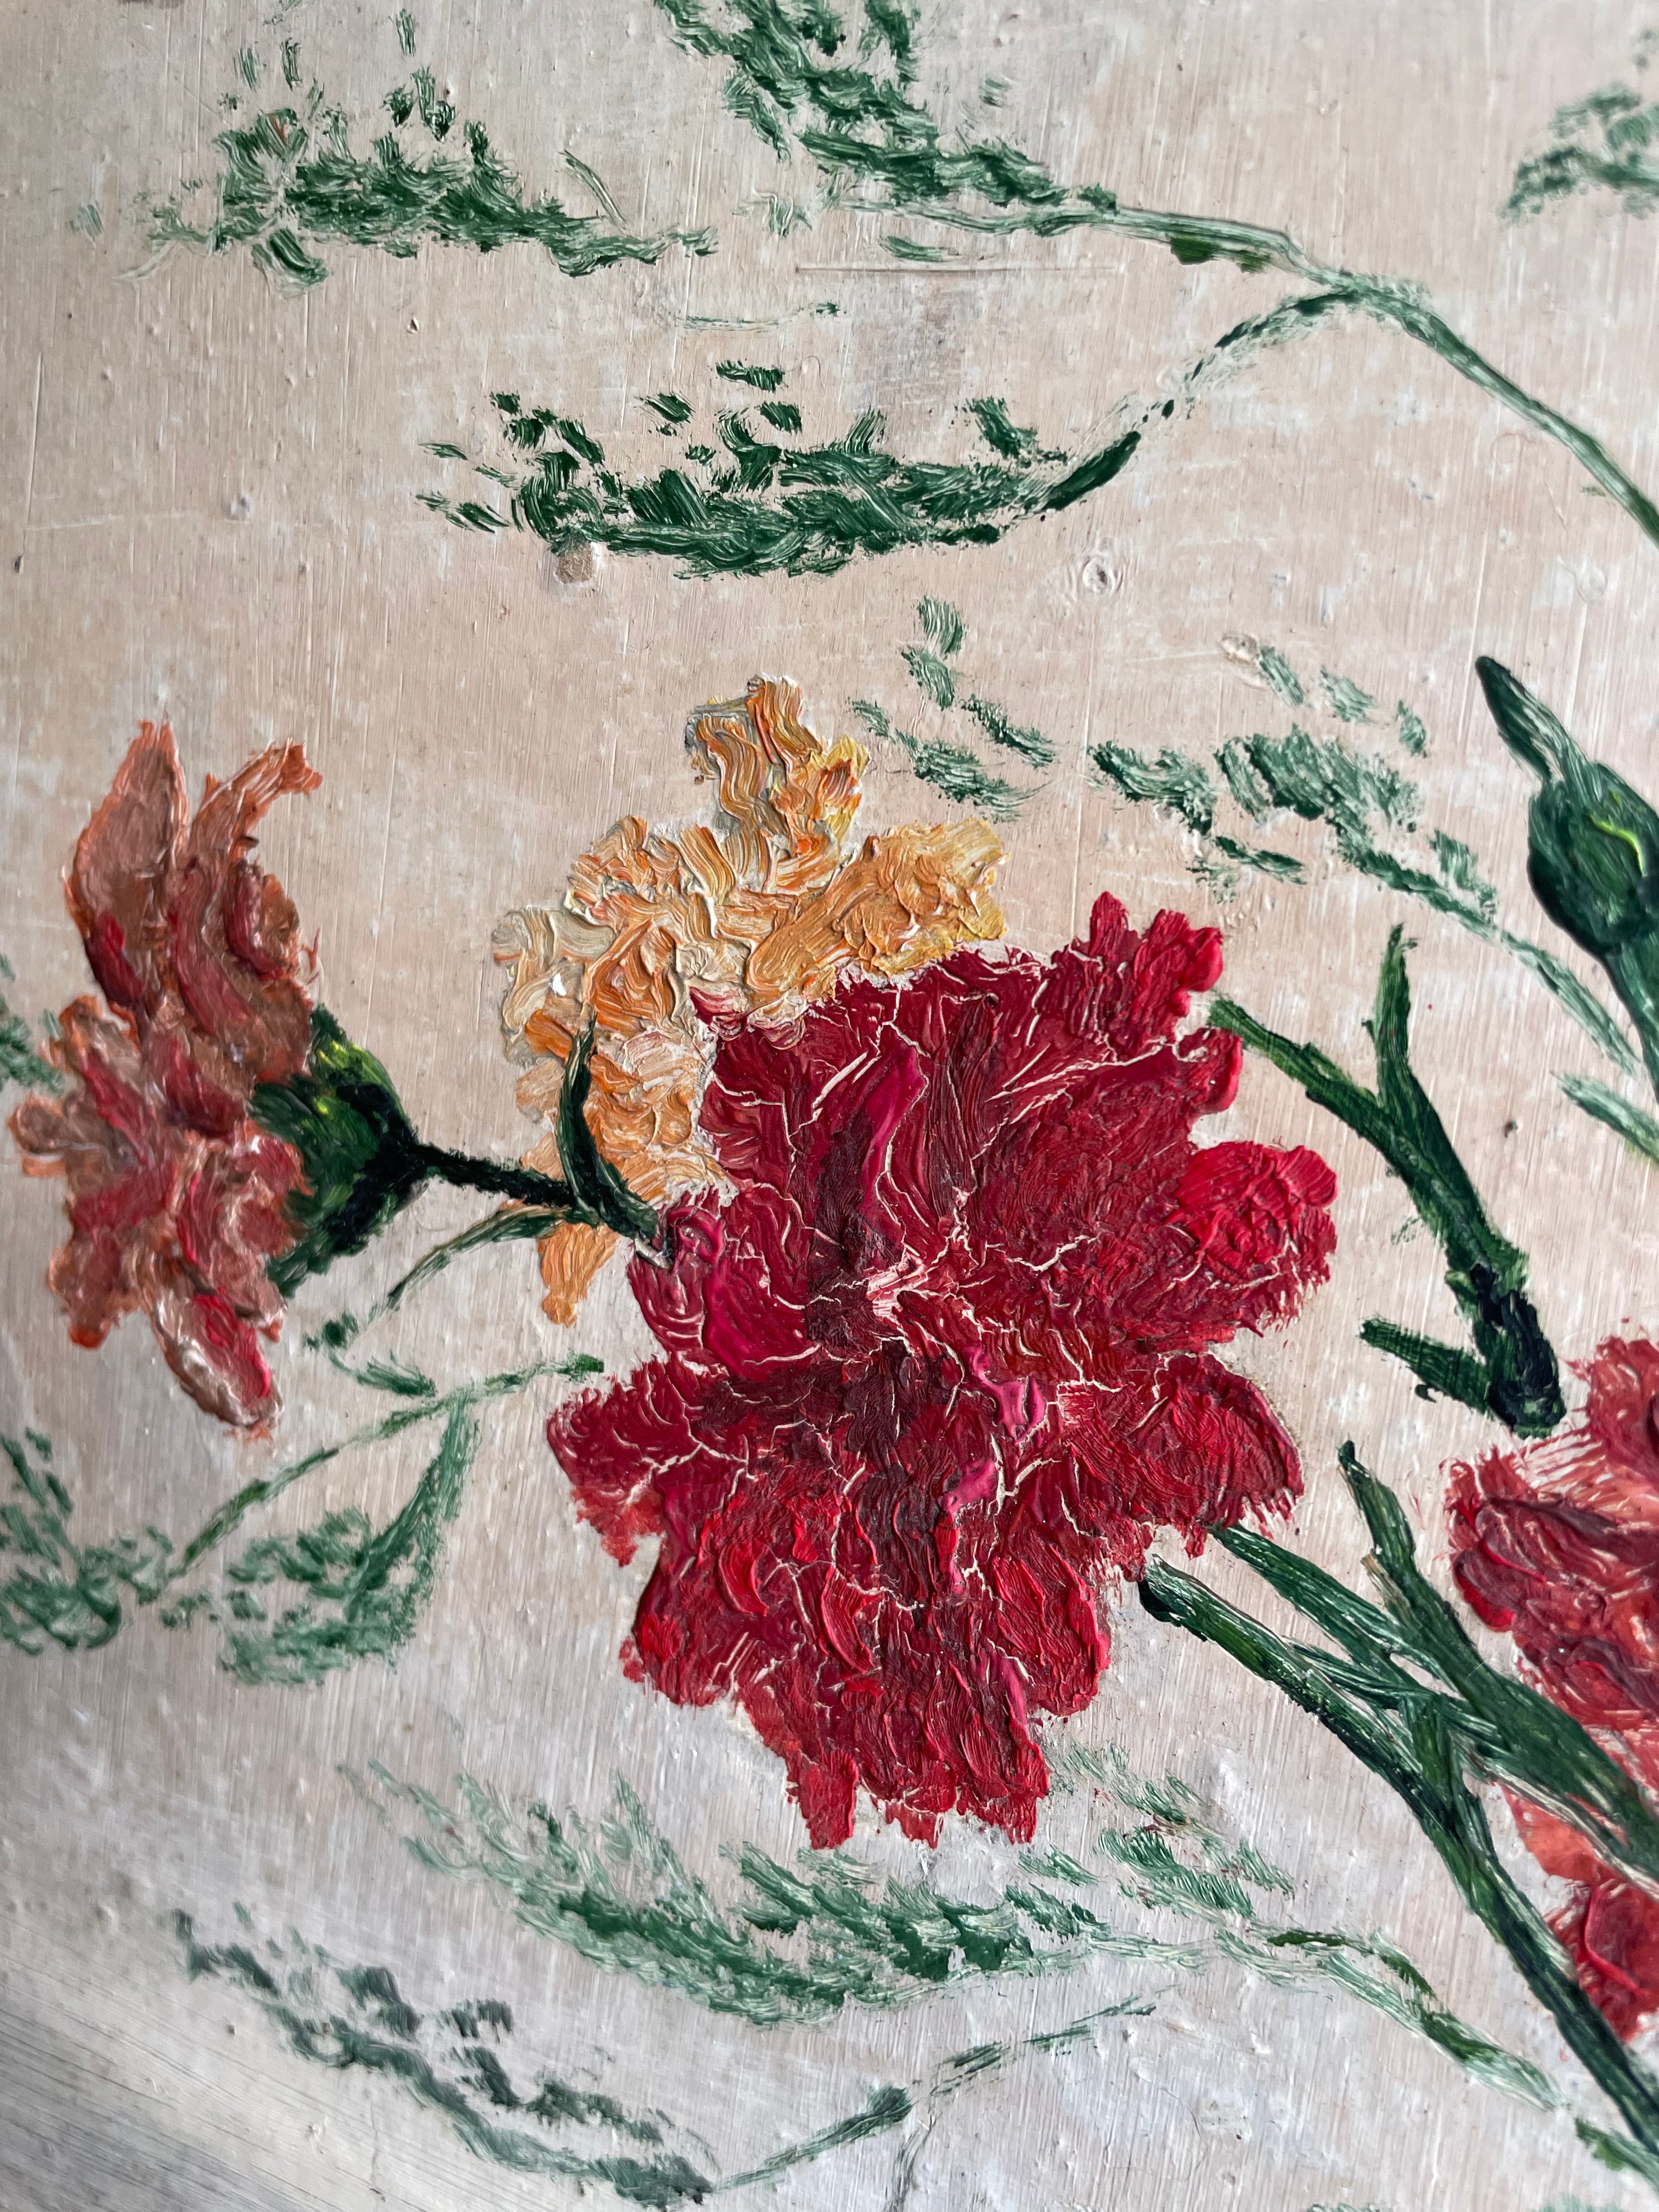 Red Dahlias: Vintage Oil on Wood Panel